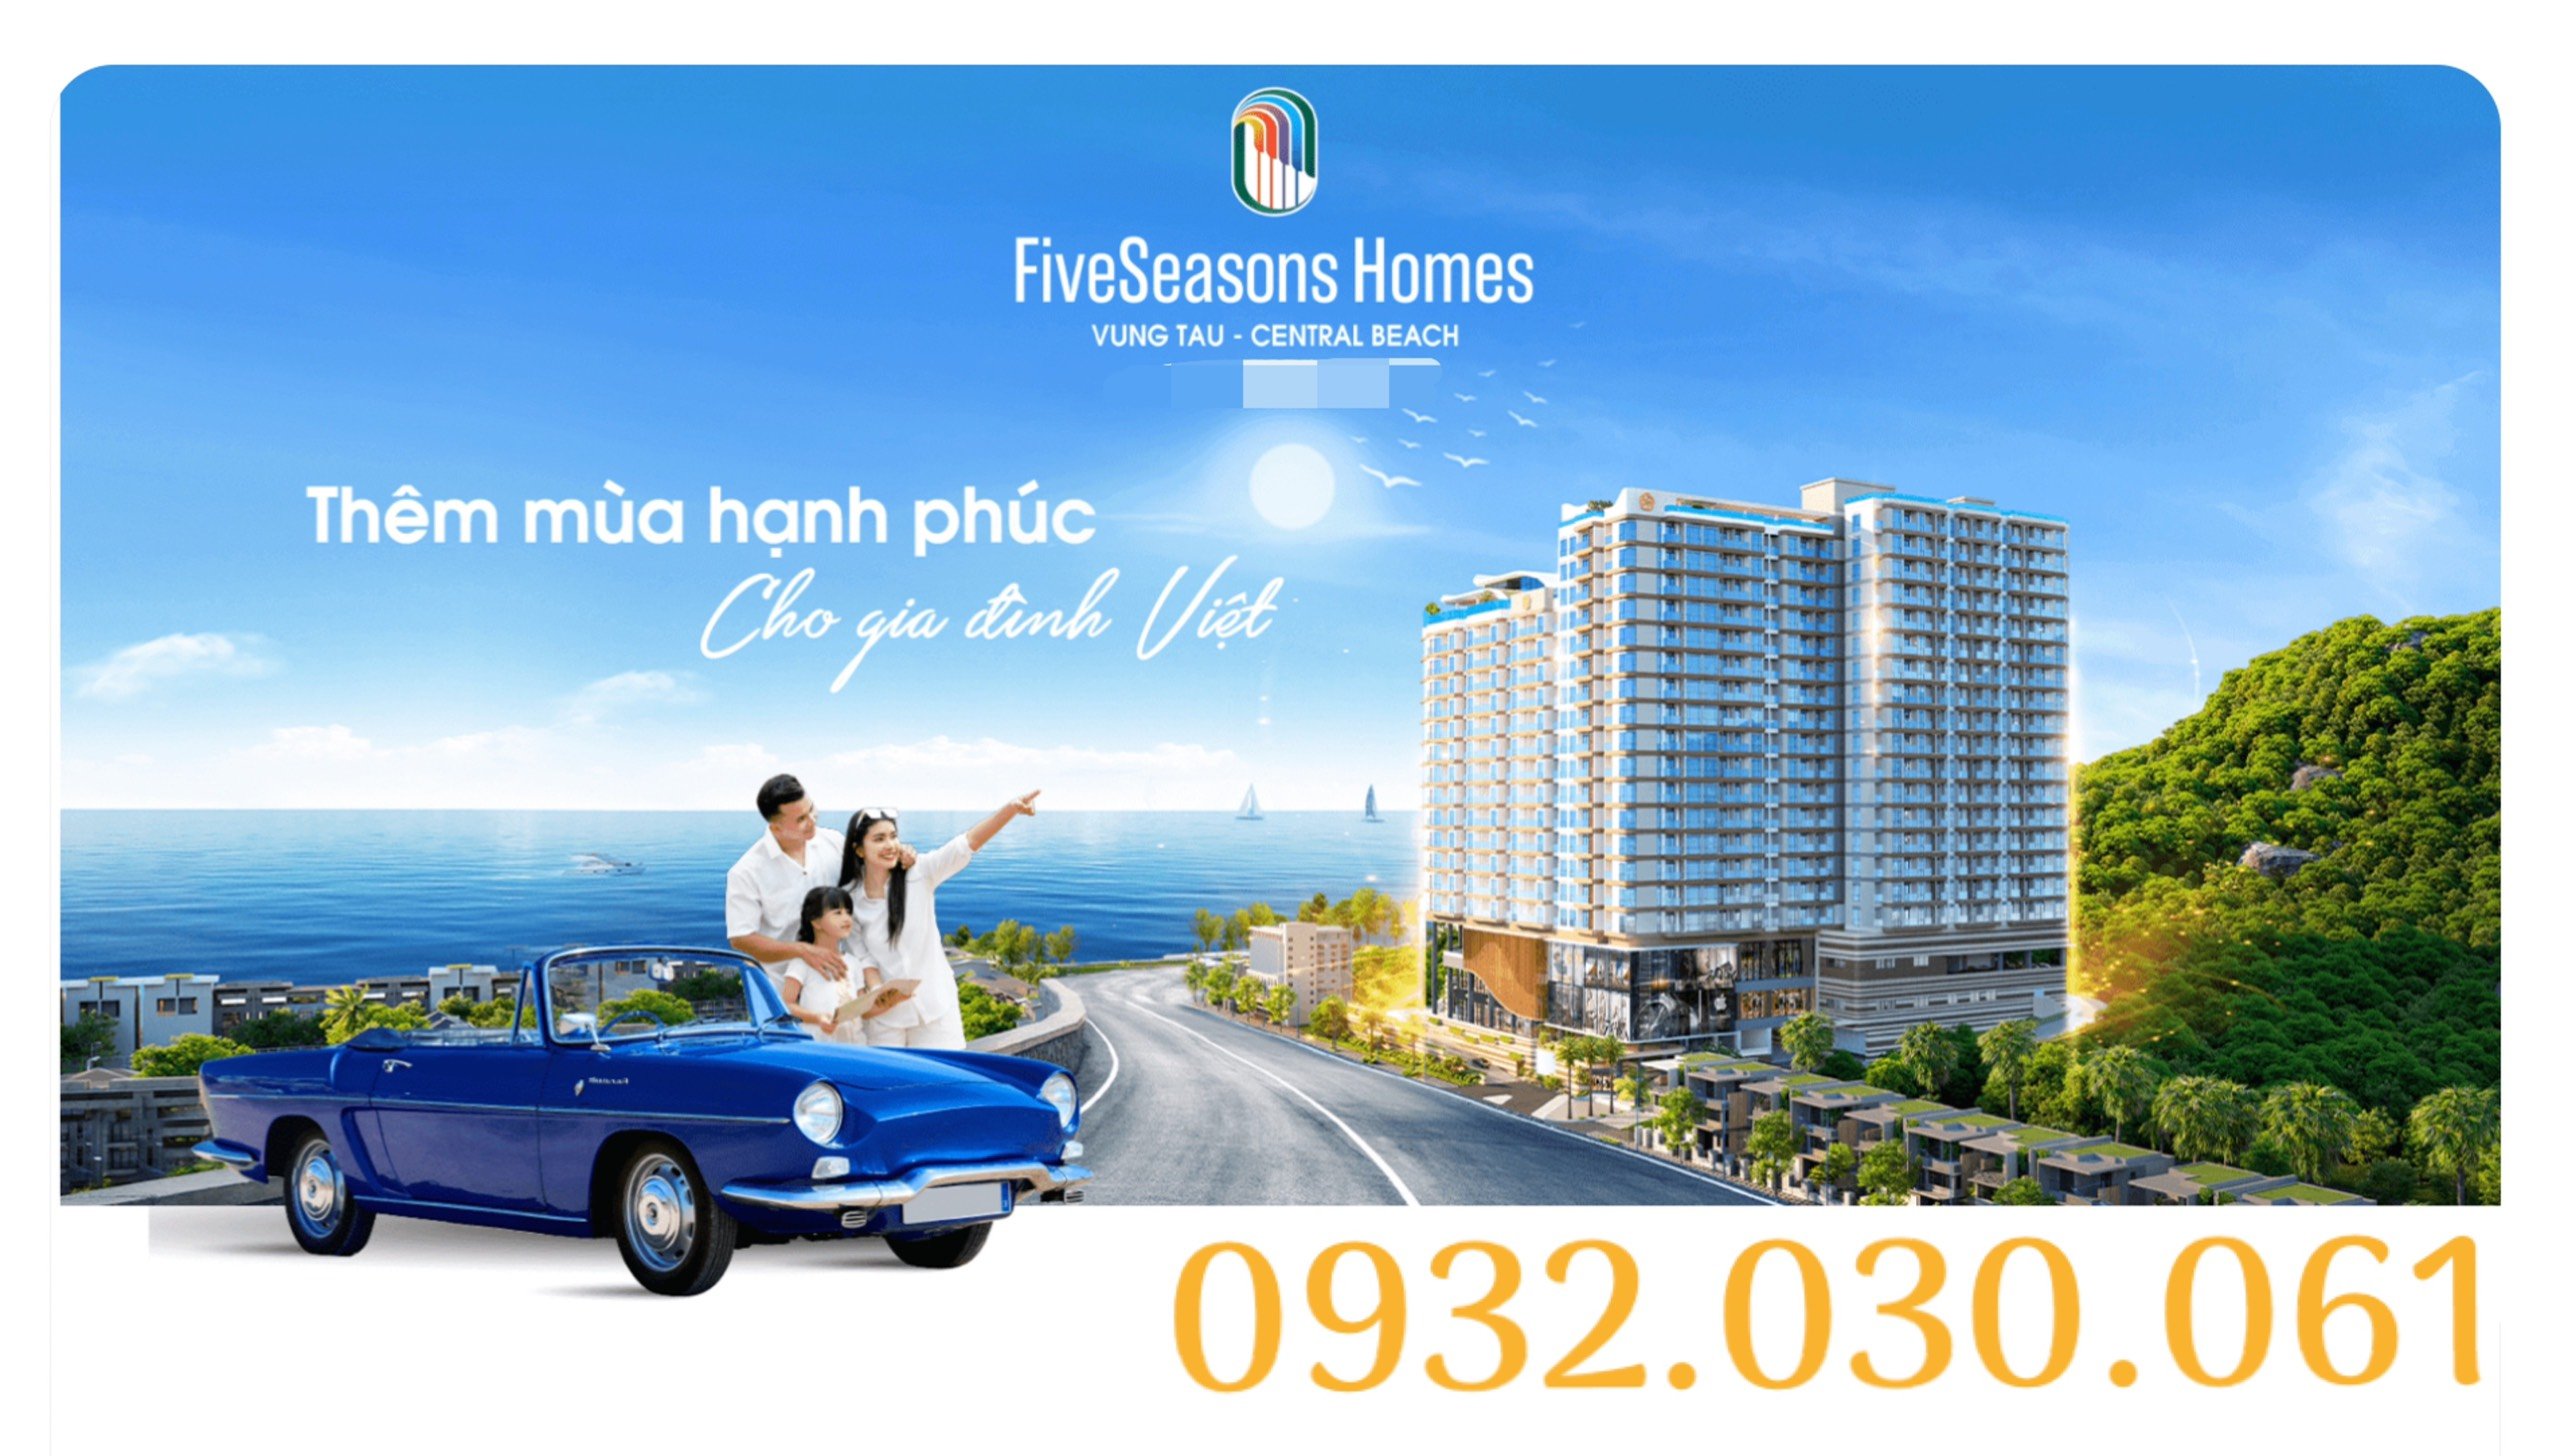 Five Seasons Homes 15% kí hợp đồng , 1.5%/tháng chỉ 300m tới biển Vũng Tàu 0932030061 1